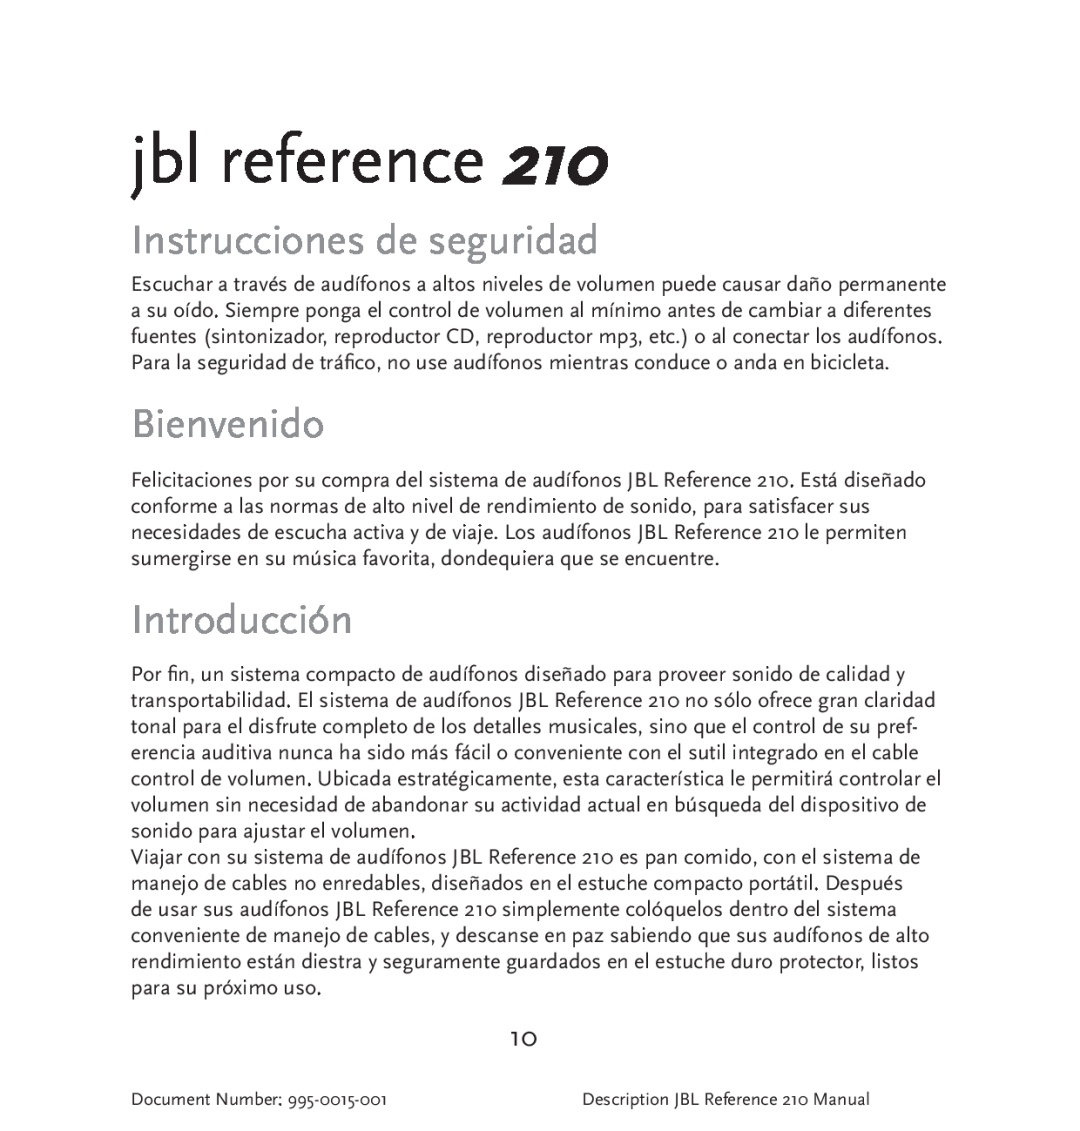 JBL 210 manual Instrucciones de seguridad, Bienvenido, Introducción, jbl reference 